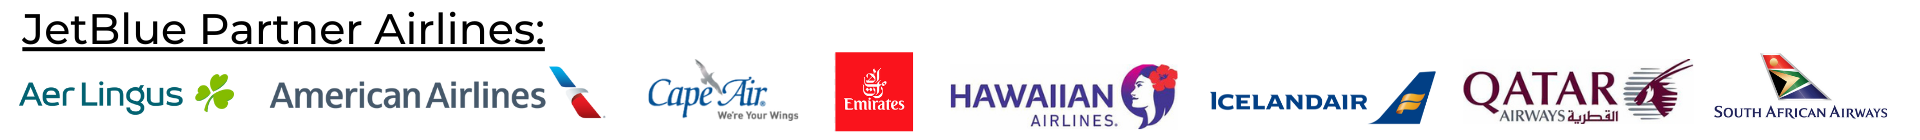 JetBlue airline partner logos